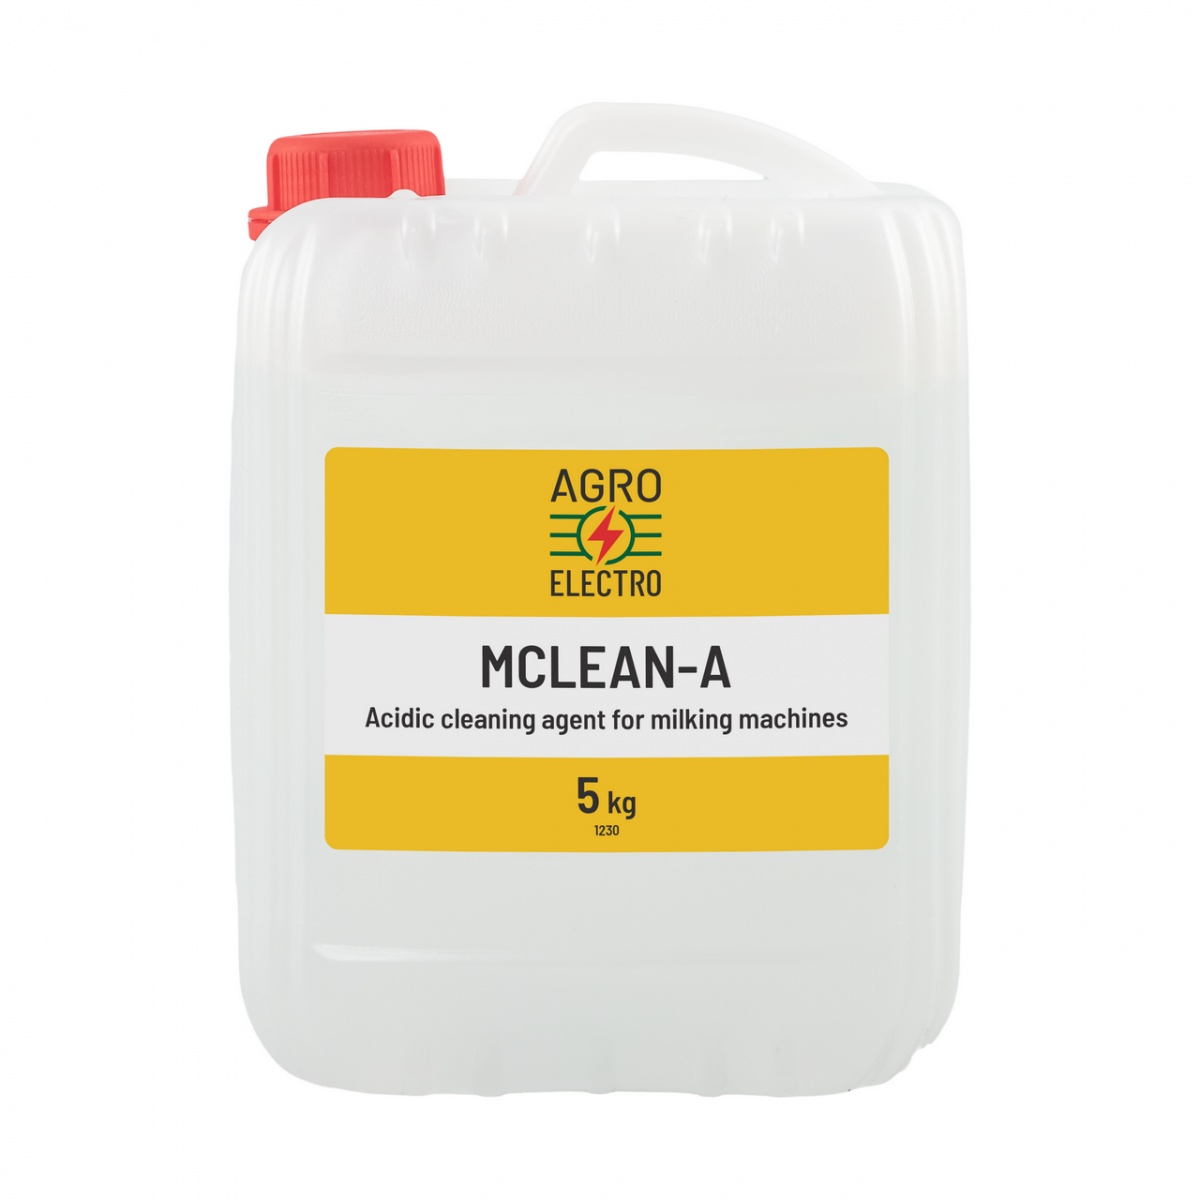 Detergent acidic pentru curățarea aparatelor de muls, MCLEAN-A, 5 kg